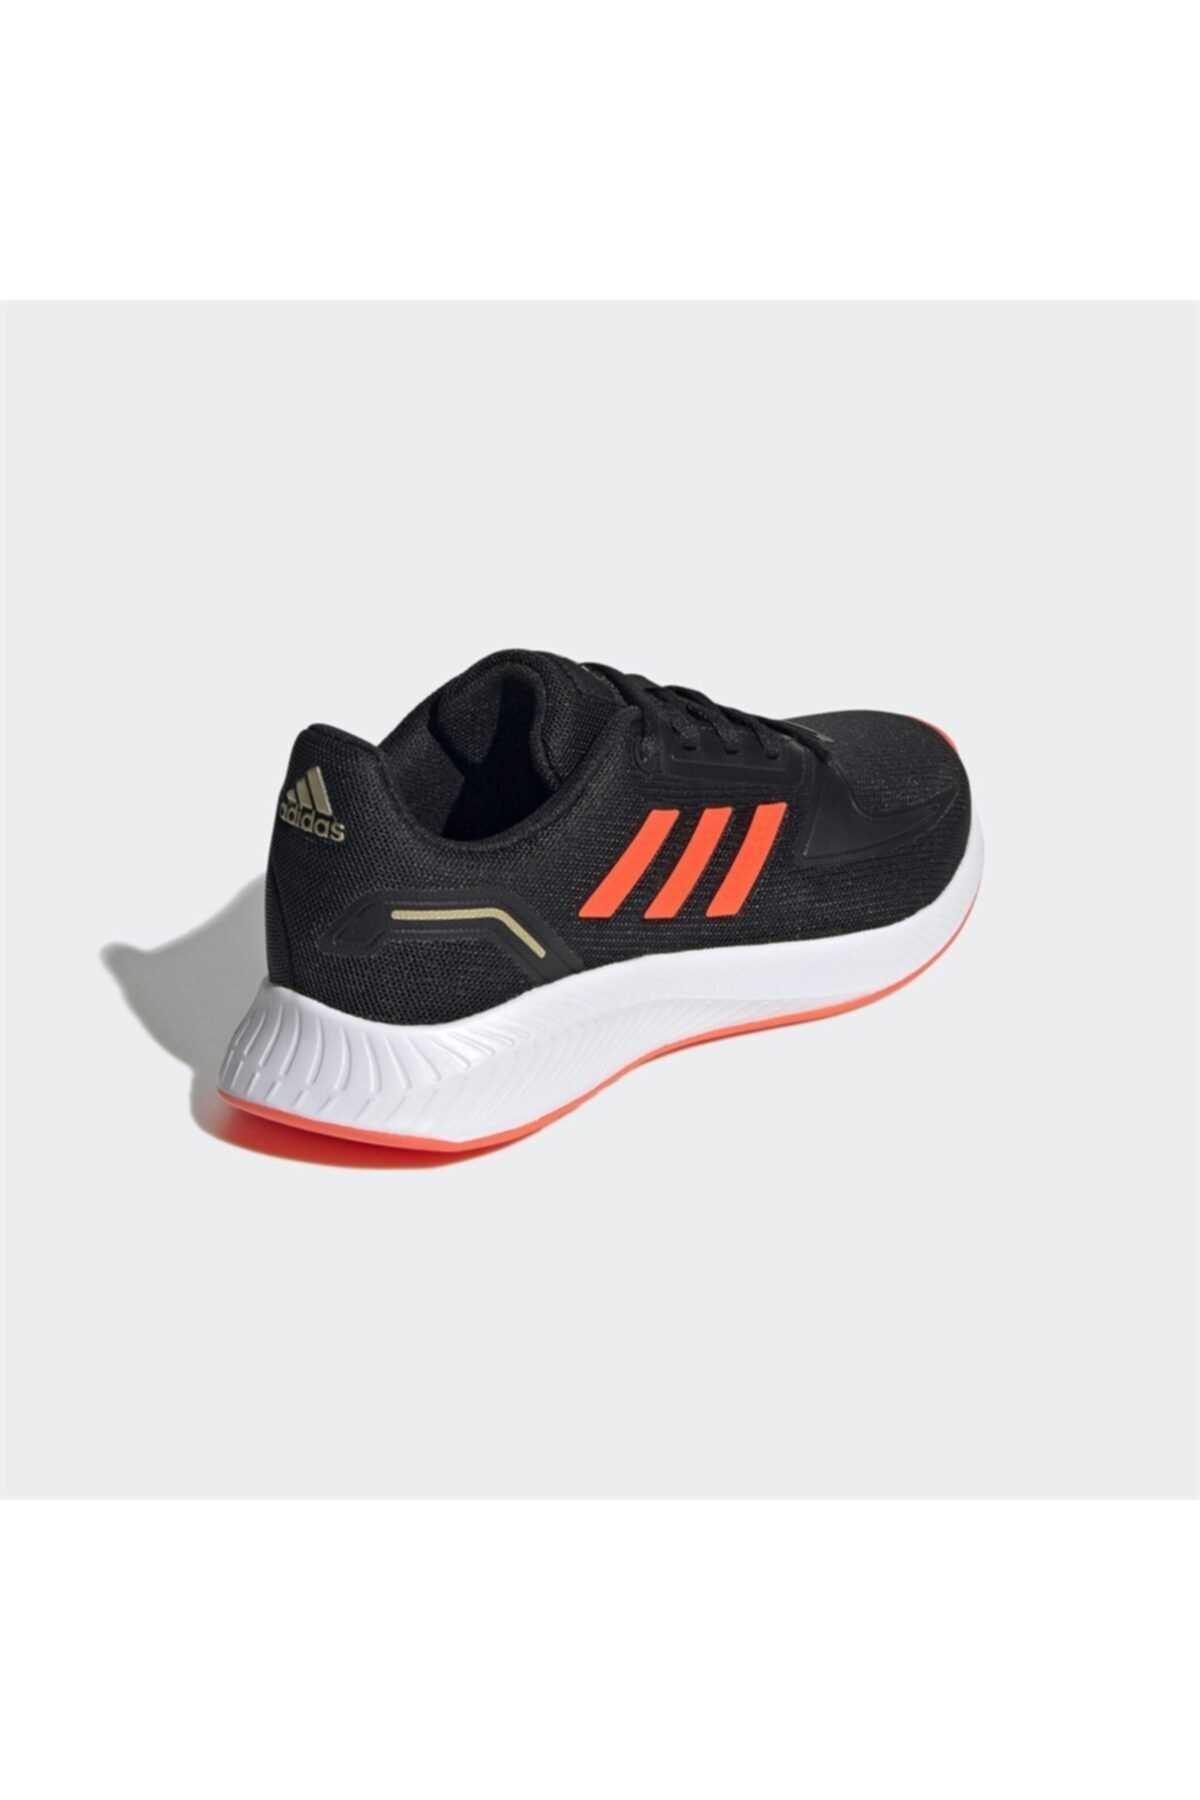 خرید اینترنتی کفش دویدن زنانه برند adidas رنگ مشکی کد ty125380565